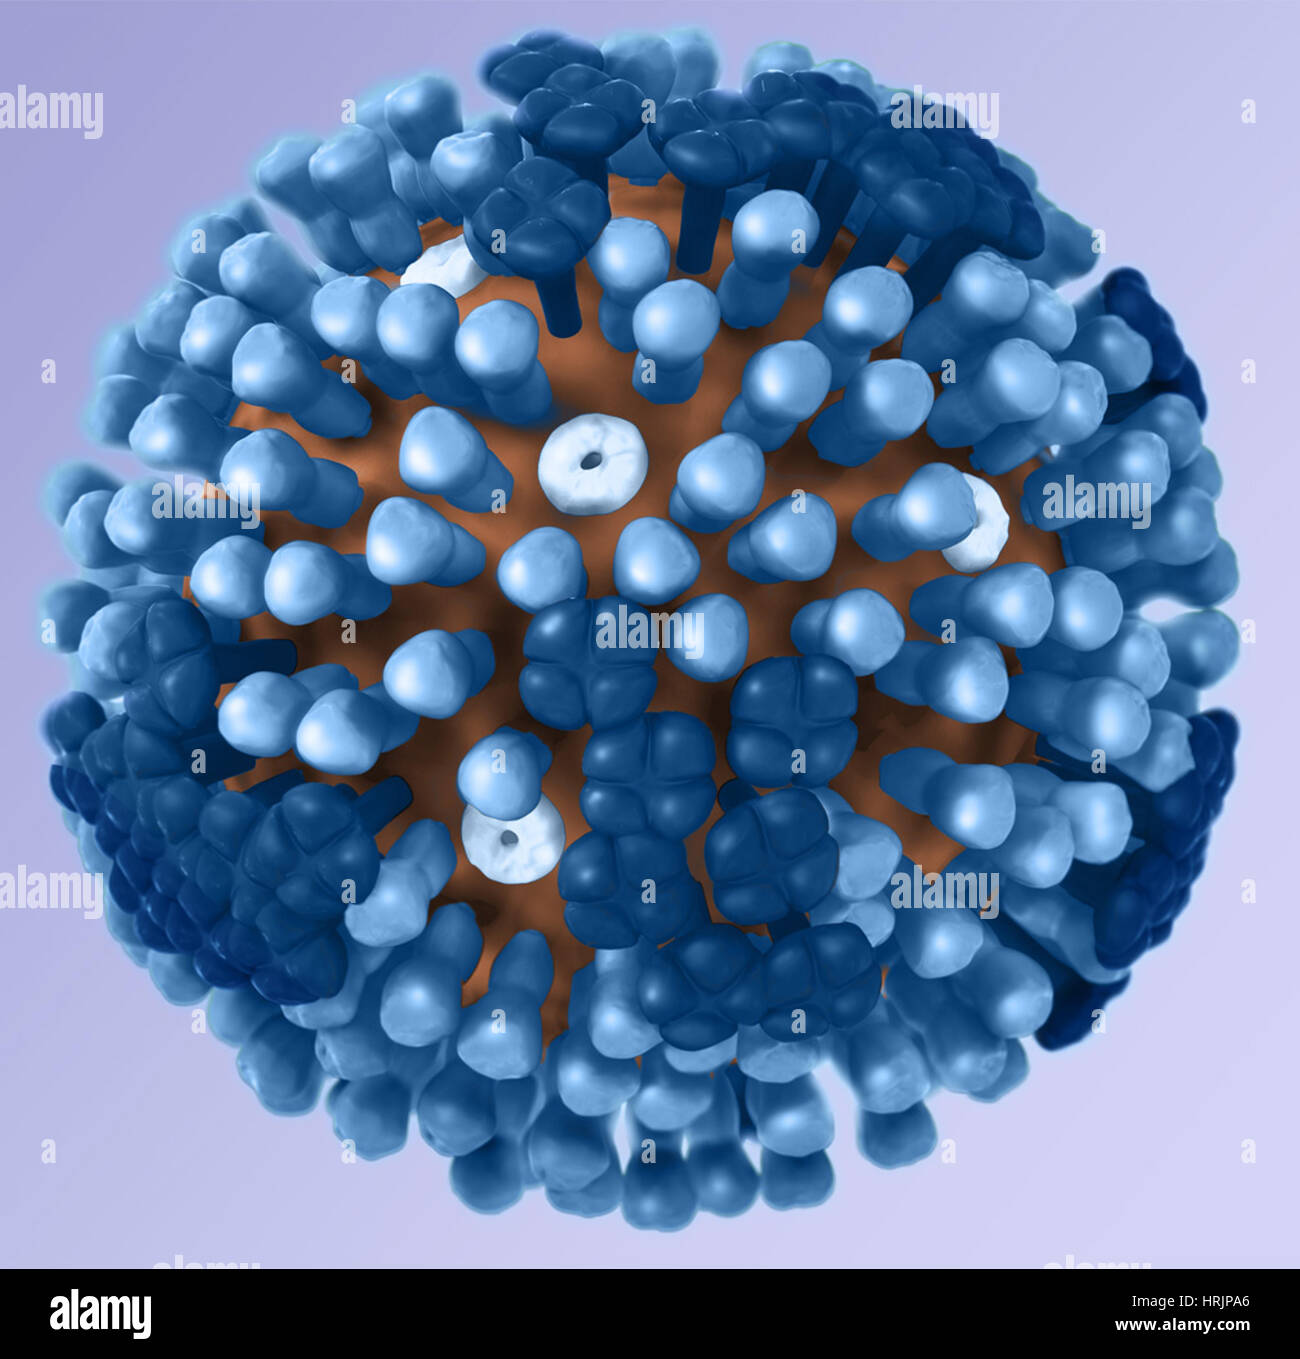 Le virus de l'influenza, modèle 3D Banque D'Images